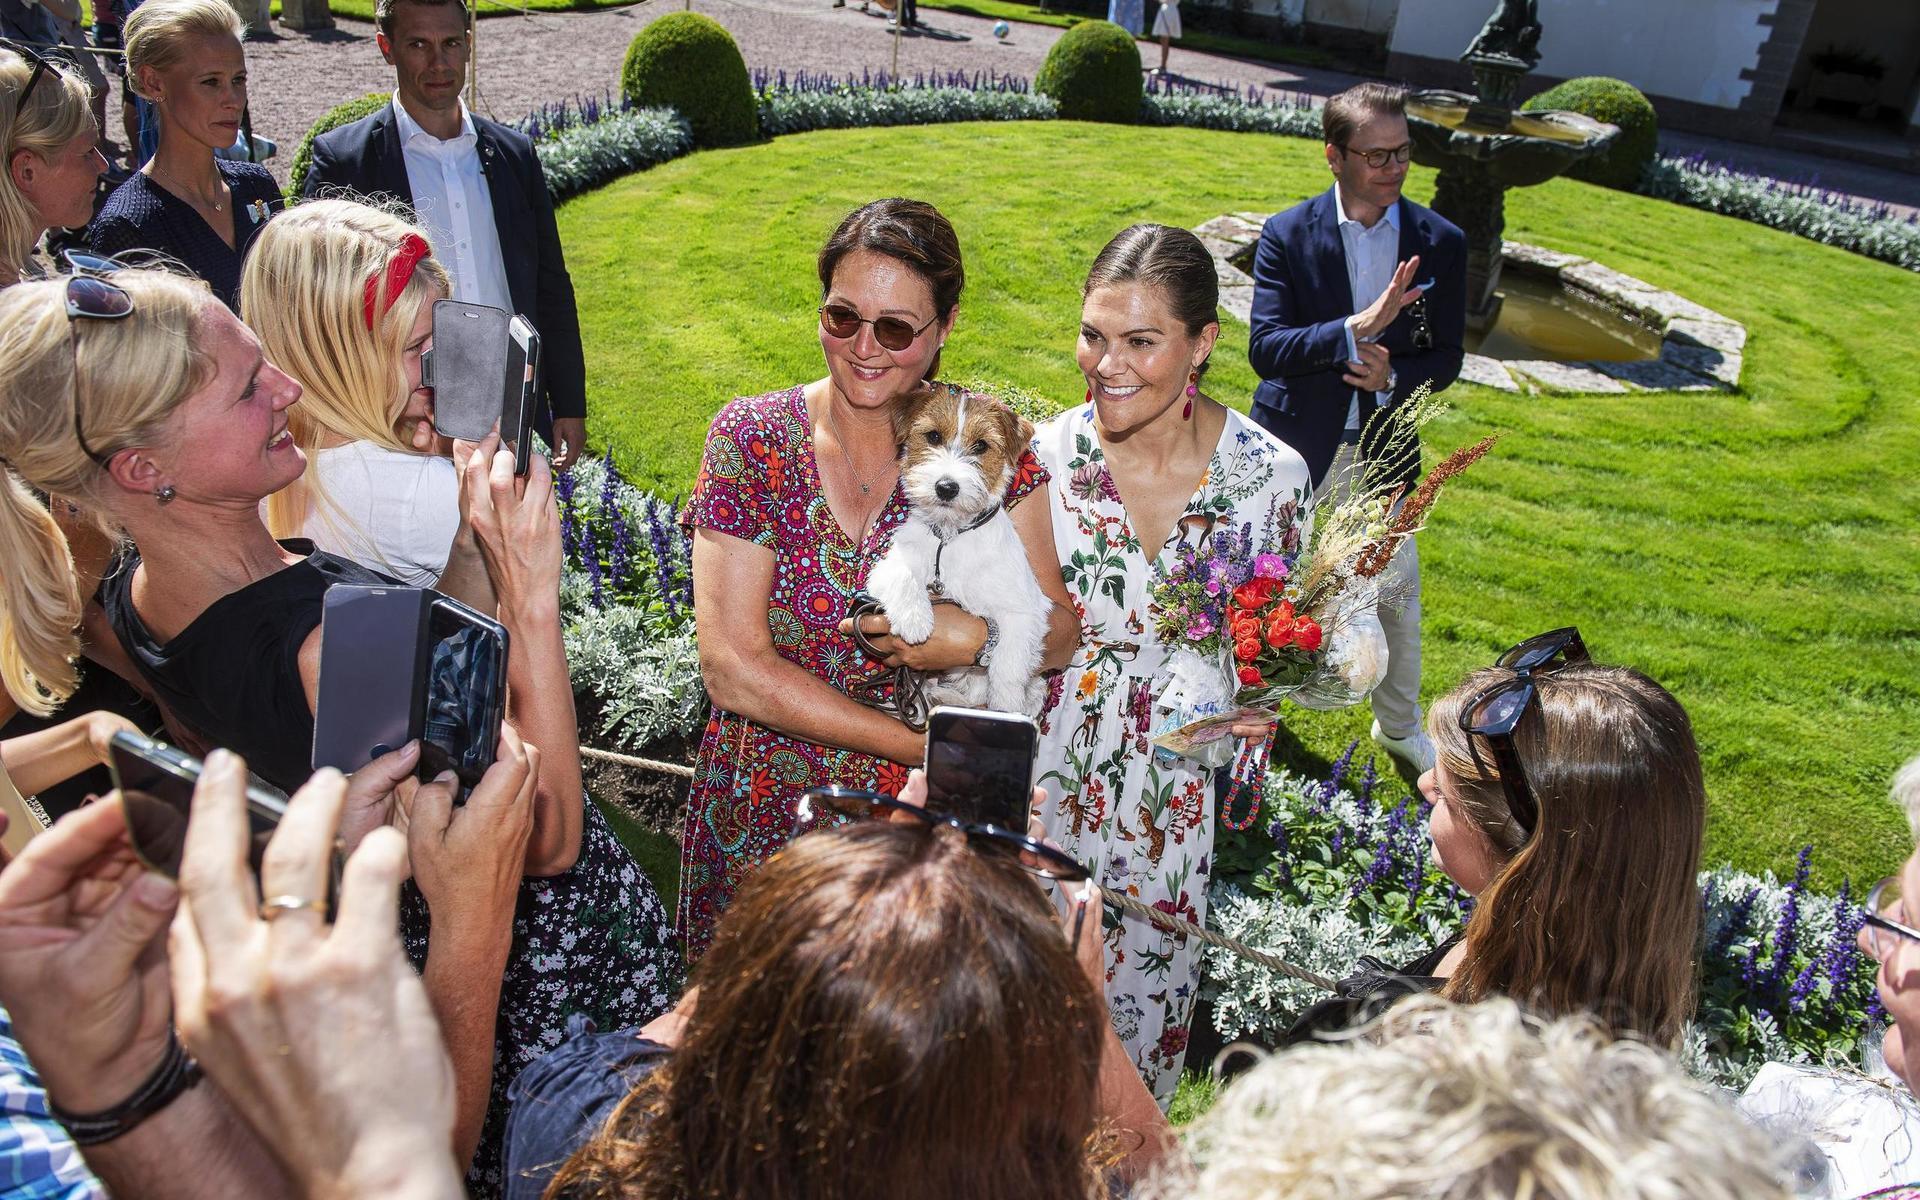 Förra året var det strålande sol på Öland när kronprinsessan Victoria gratulerades av allmänheten på Solliden. Att ta en selfie med henne är populärt.